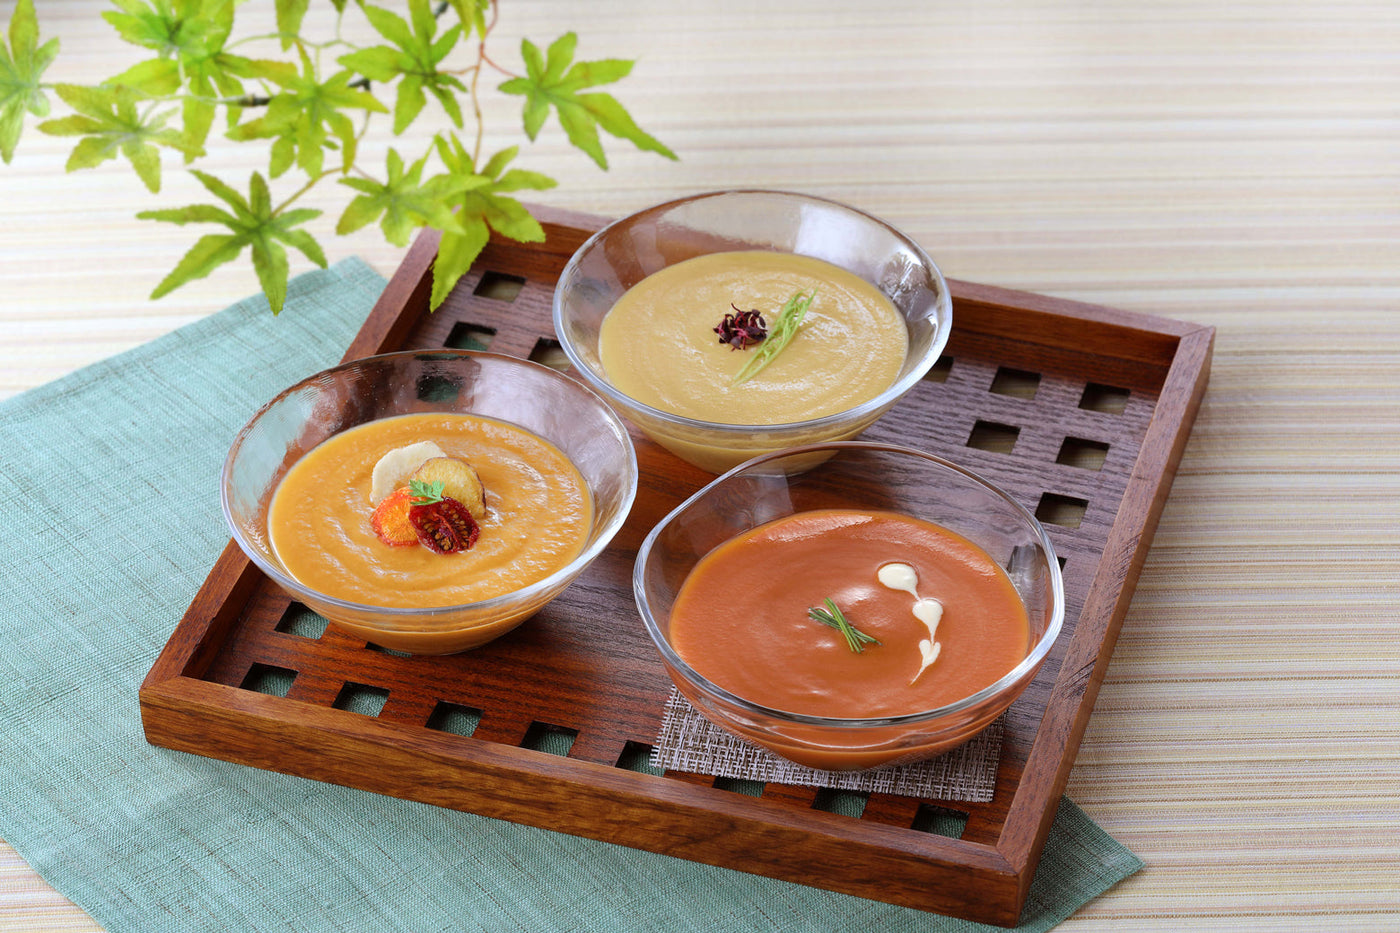 和風スープ(3個) 甘えび・10種の野菜・とうもろこし